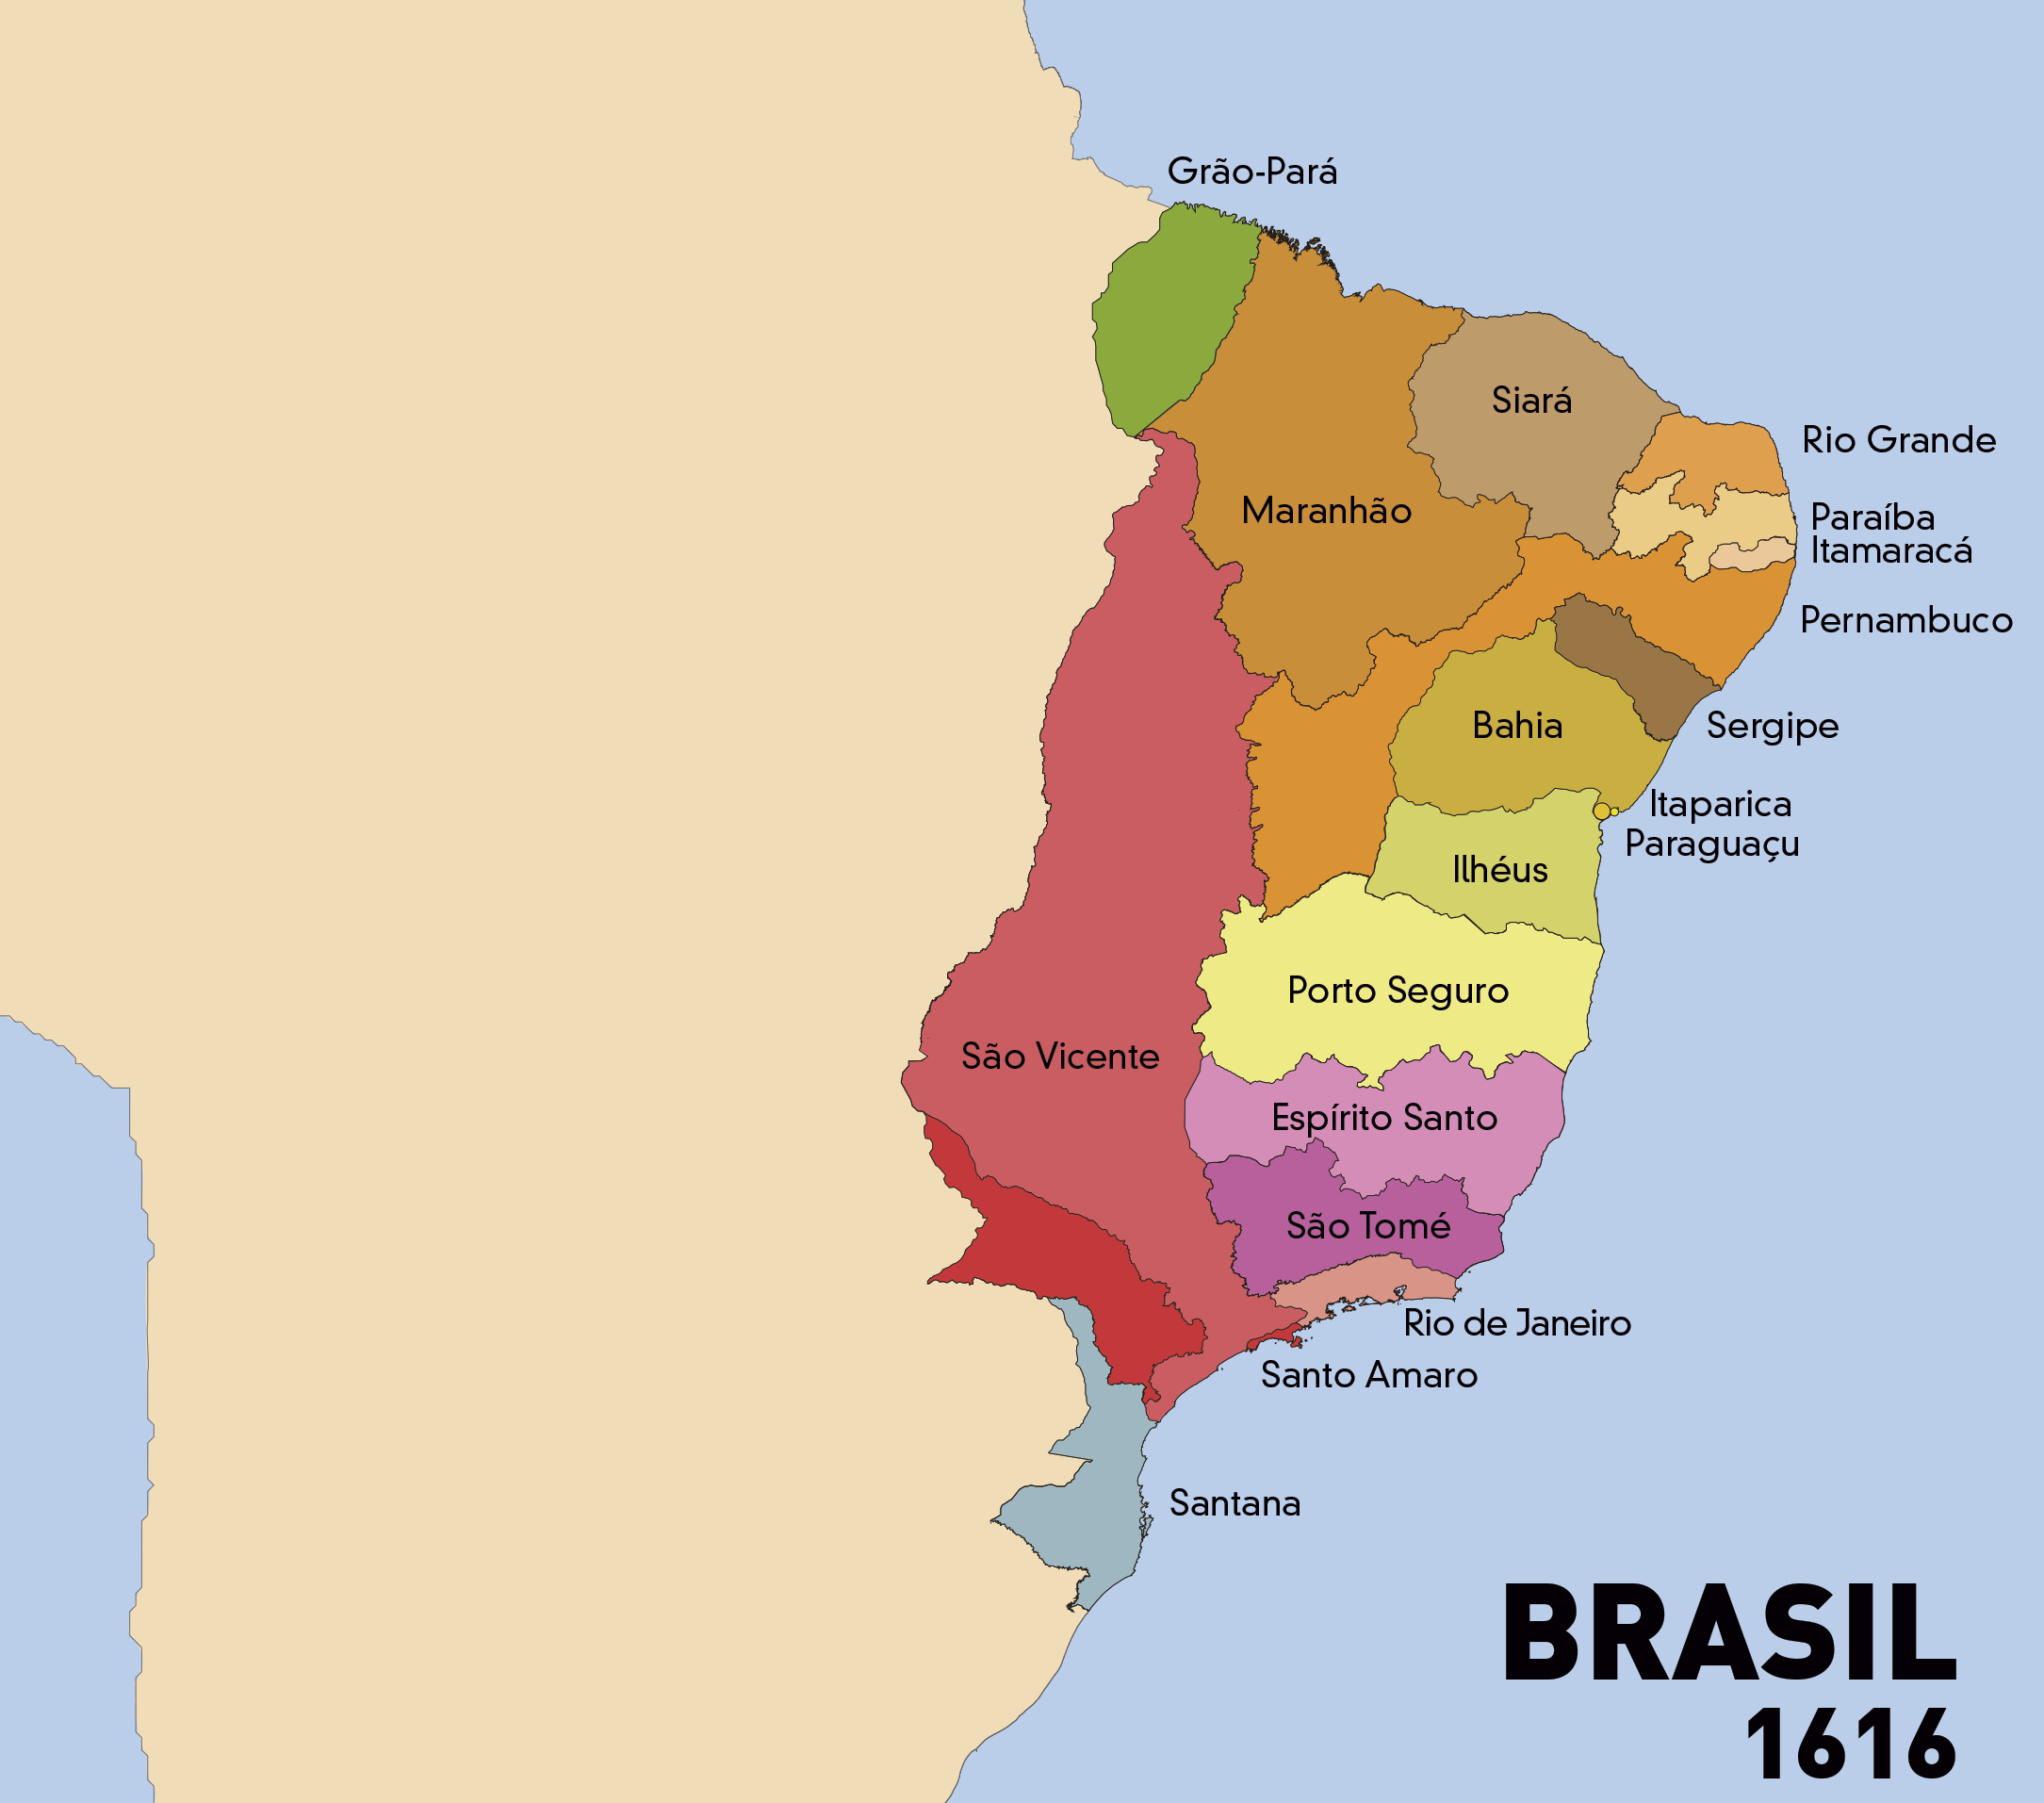 File:Mapa-brasil-1616 -Criação-Capitania do Maranhão-Capitania do  Grão-Pará.png - Wikipedia